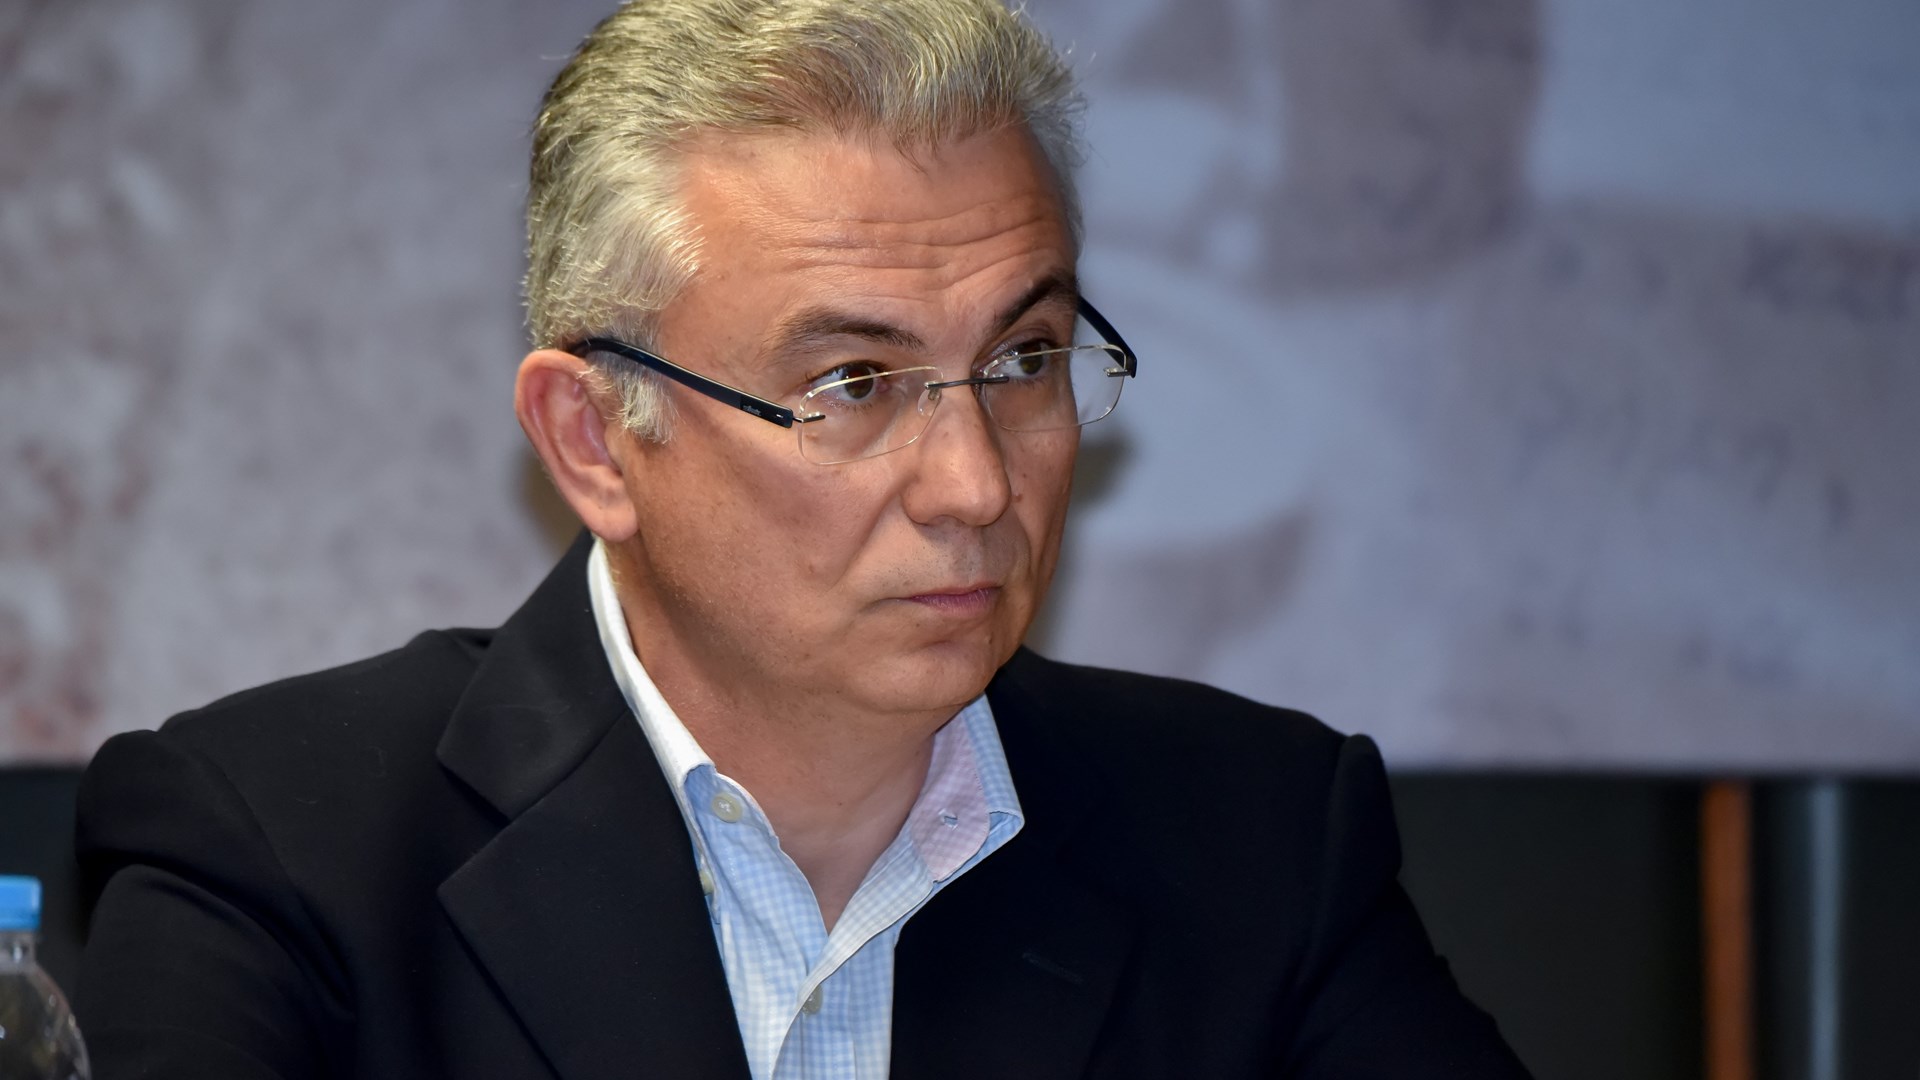 Ρουσόπουλος: Σκέφτομαι σοβαρά να επιστρέψω στην πολιτική – ΒΙΝΤΕΟ